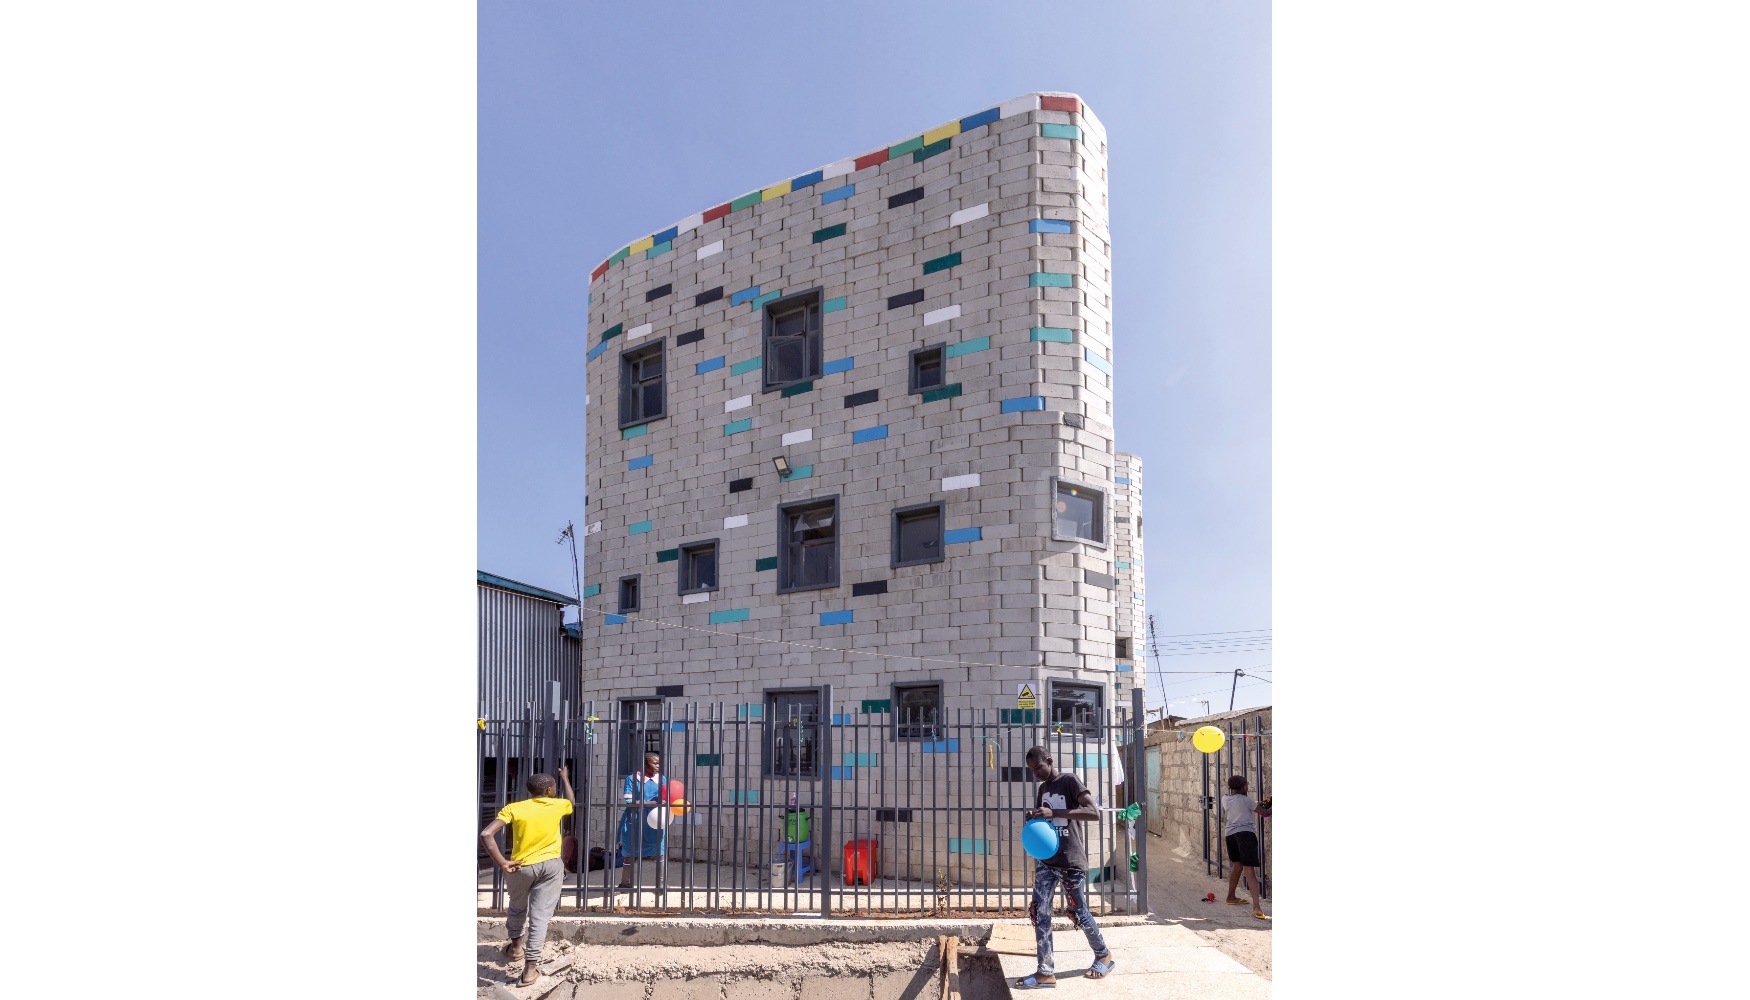 Nueva escuela en Kibera construida con TwistBlocks